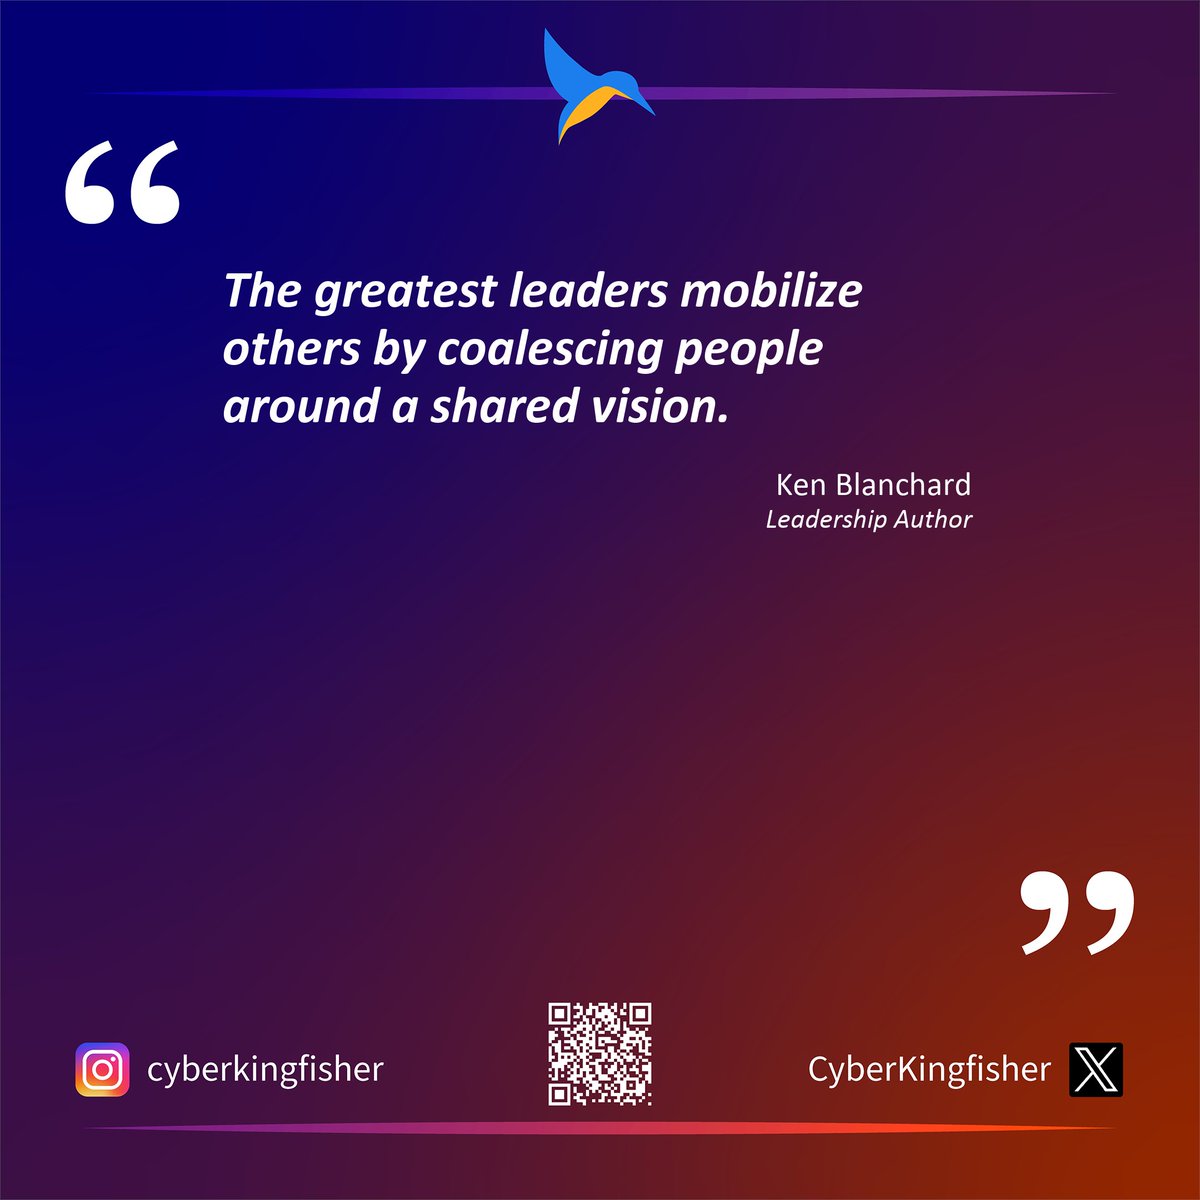 Ken Blanchard on leadership.

#Leadership #GrowthMindset #GreatestLeader #LeadershipImpact #LeadershipQuotes #PeopleEmpowerment #LeadershipInfluence